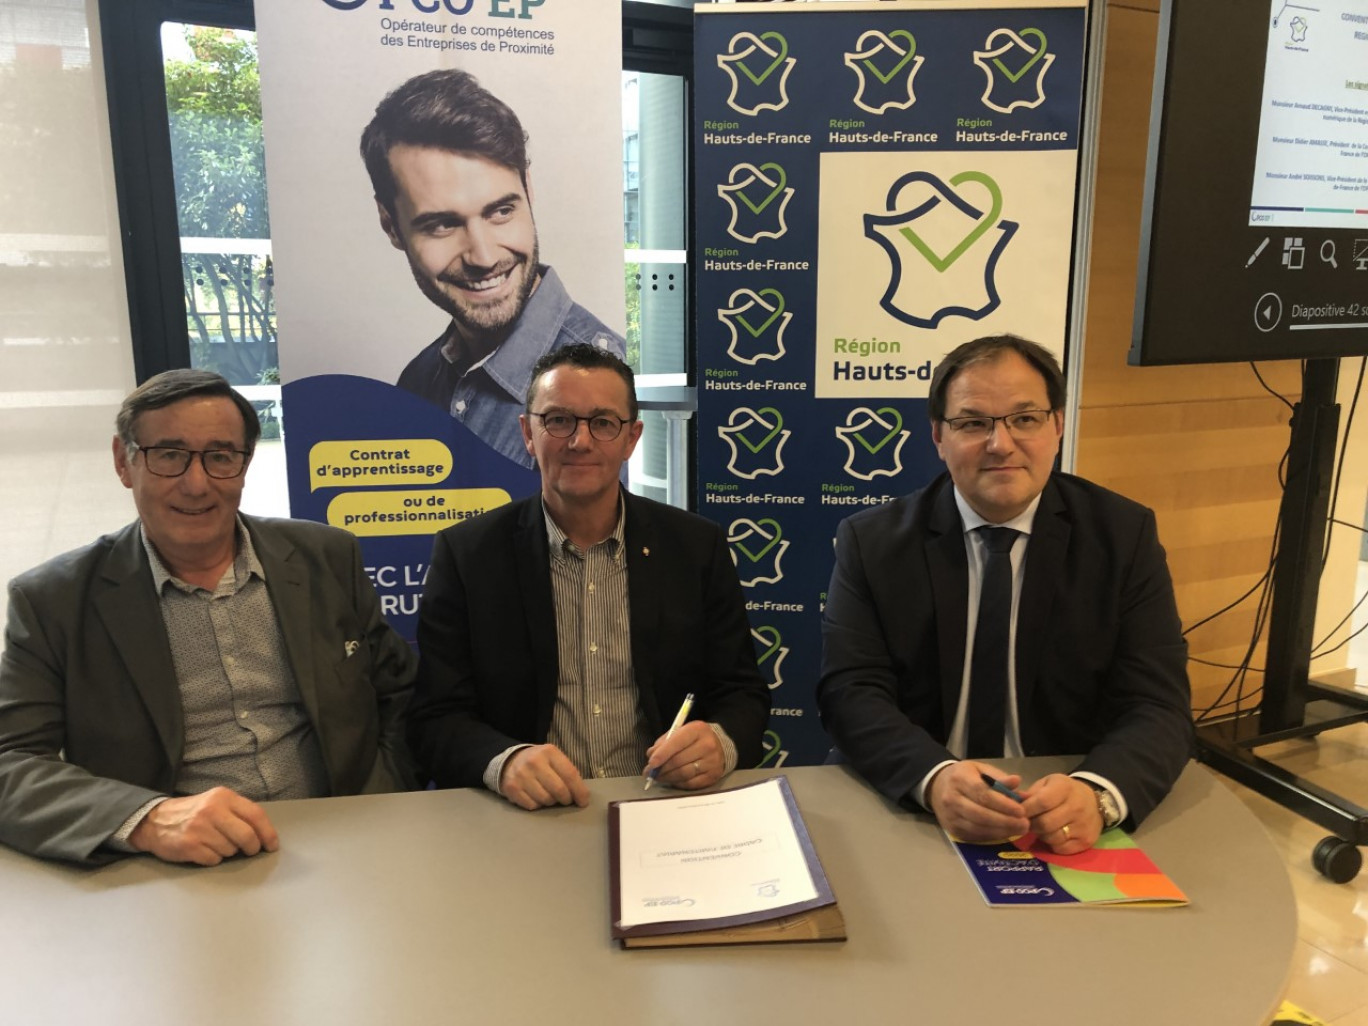 L’Opérateur de compétences des entreprises de proximité (Opco) et la Région Hauts-de-France ont signé, le 28 octobre, une convention de partenariat.